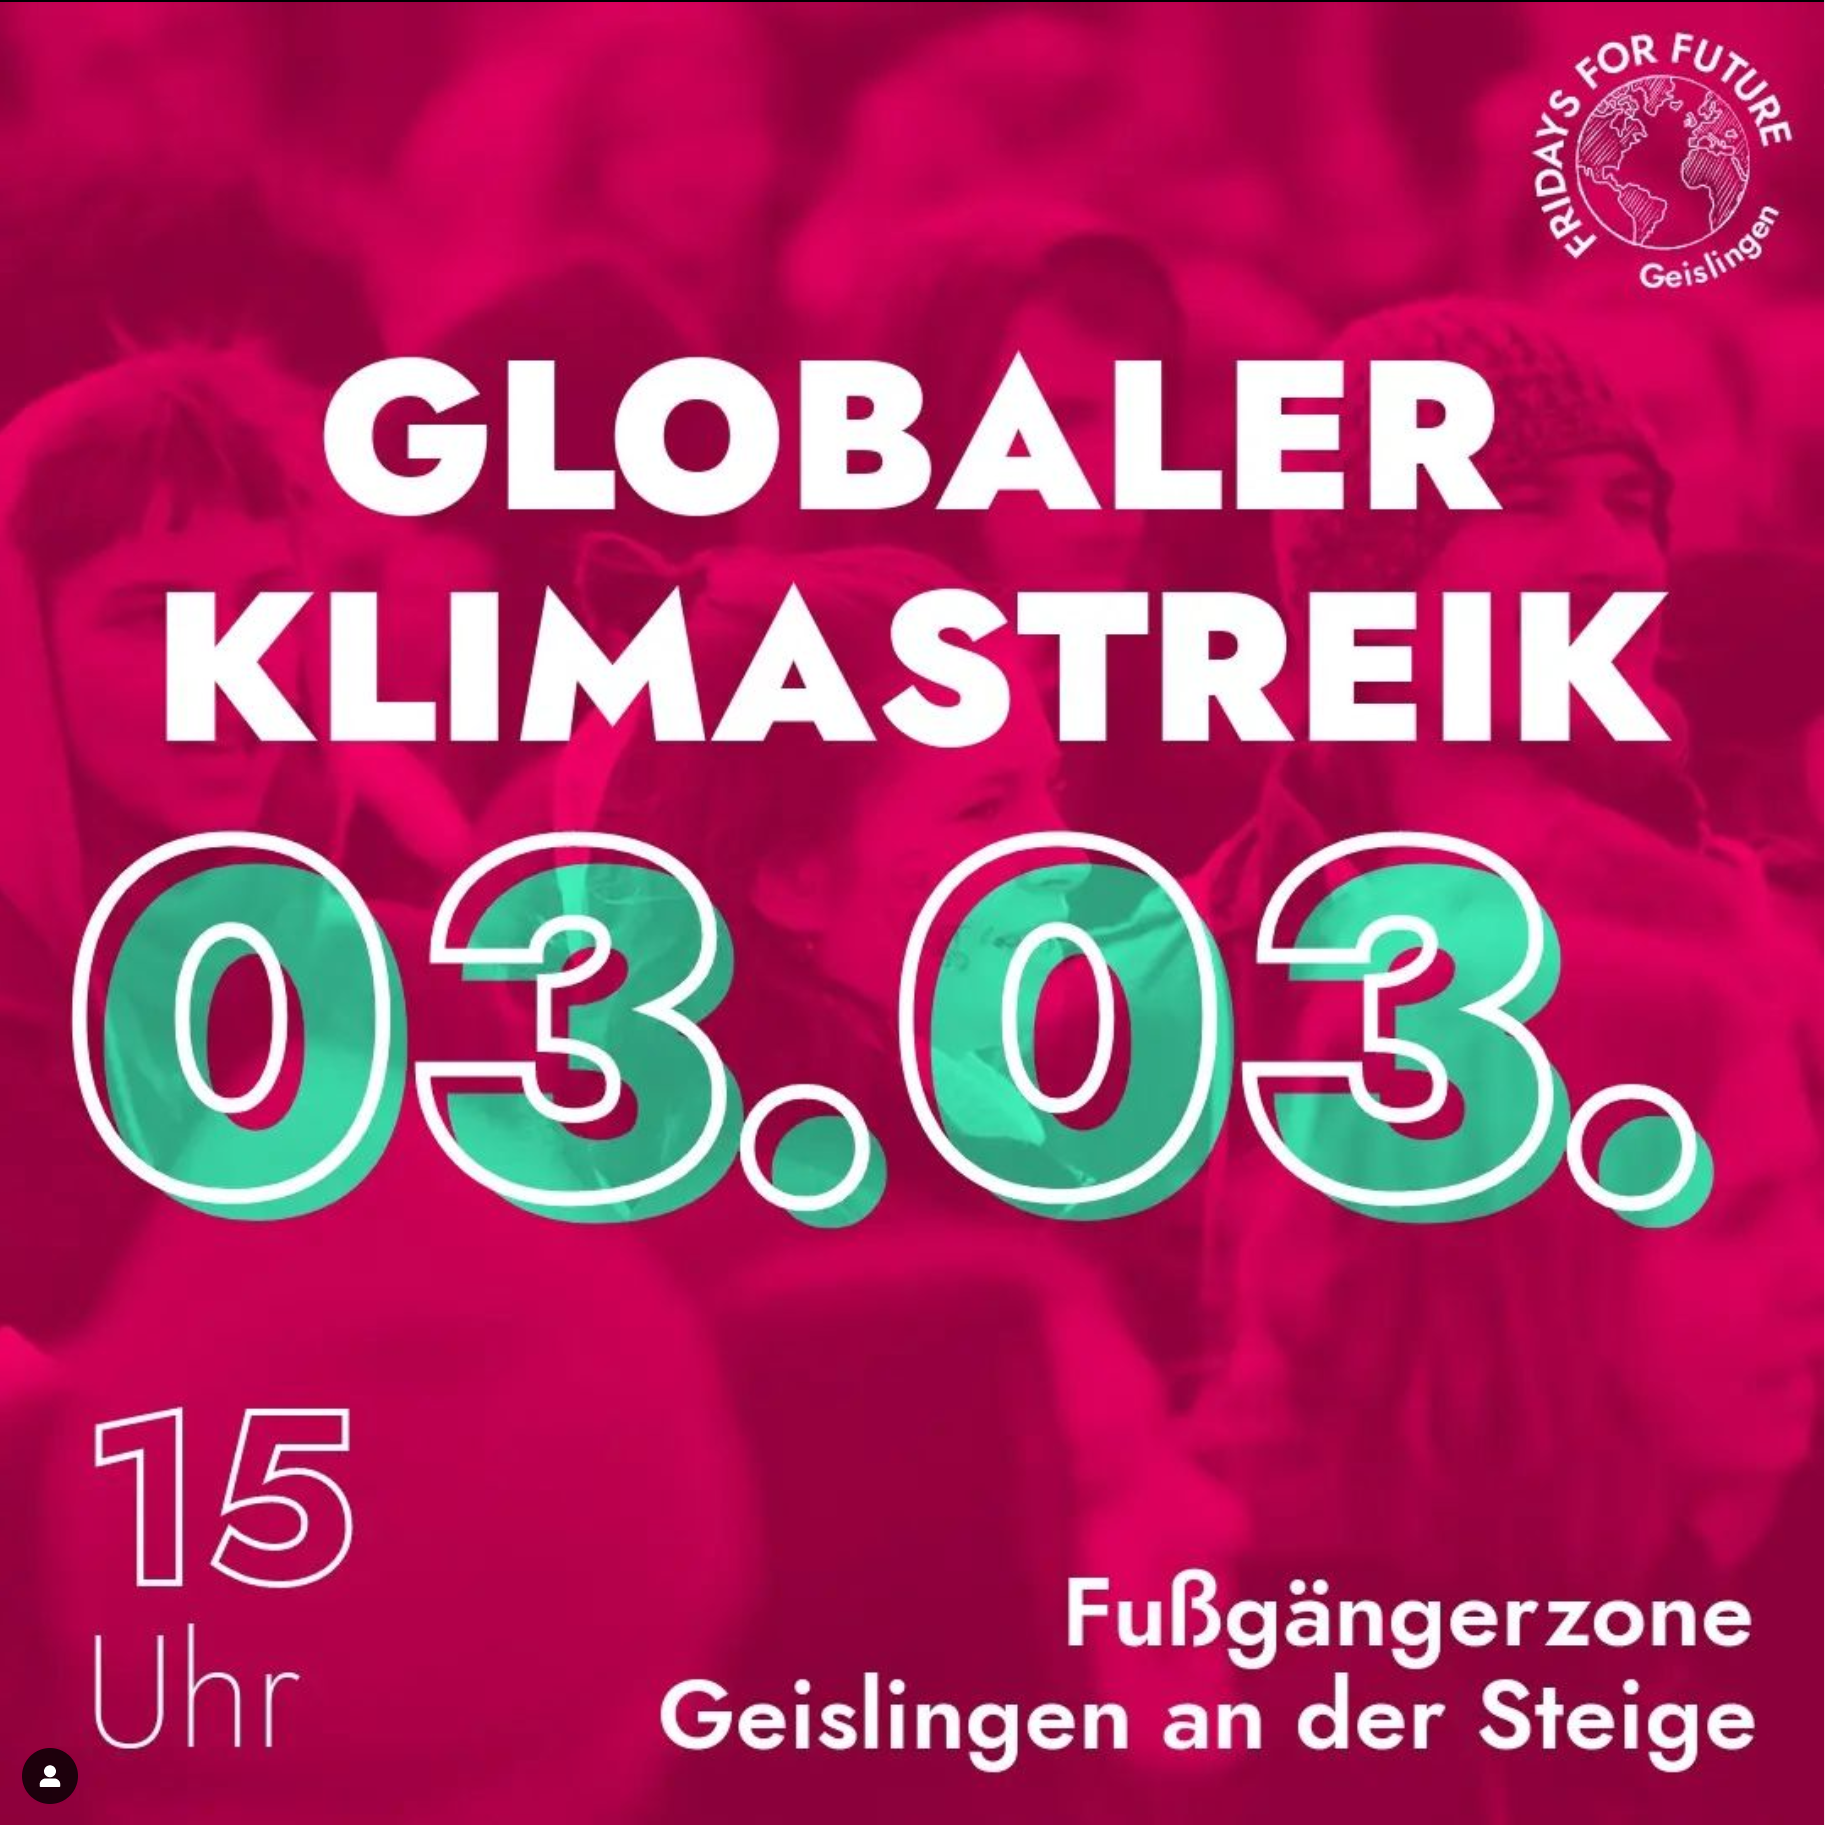 Sharepic Klimastreik Geislingen